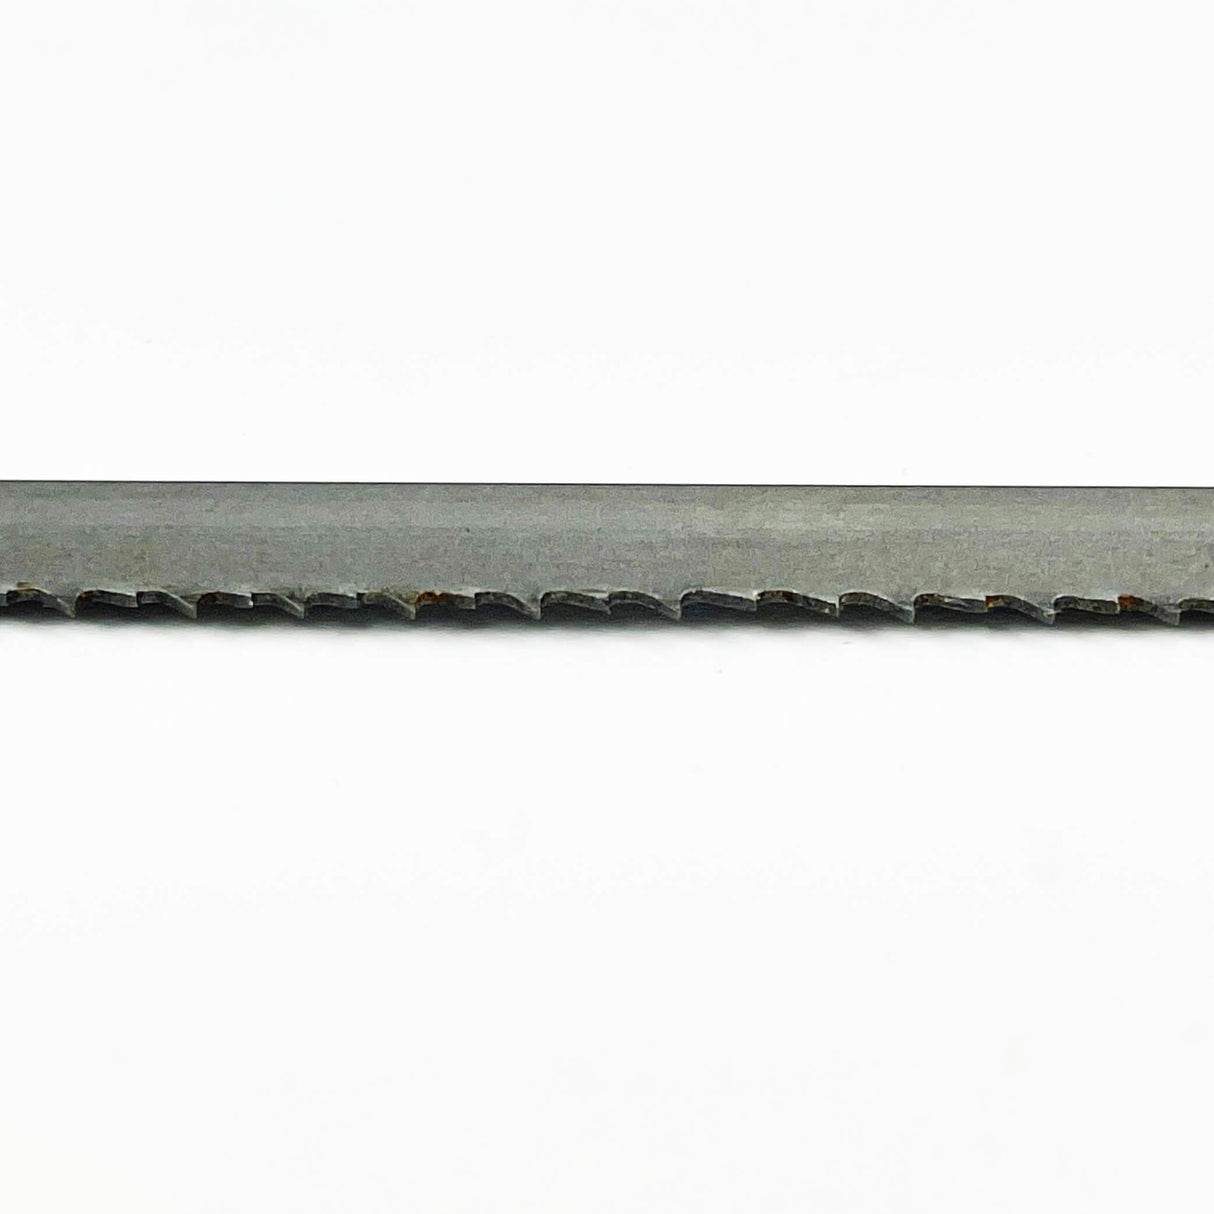 Sega a nastro bimetallica COBALT M42 da 3.630 mm di lunghezza x 13 mm di larghezza – Confezione da 2 lame